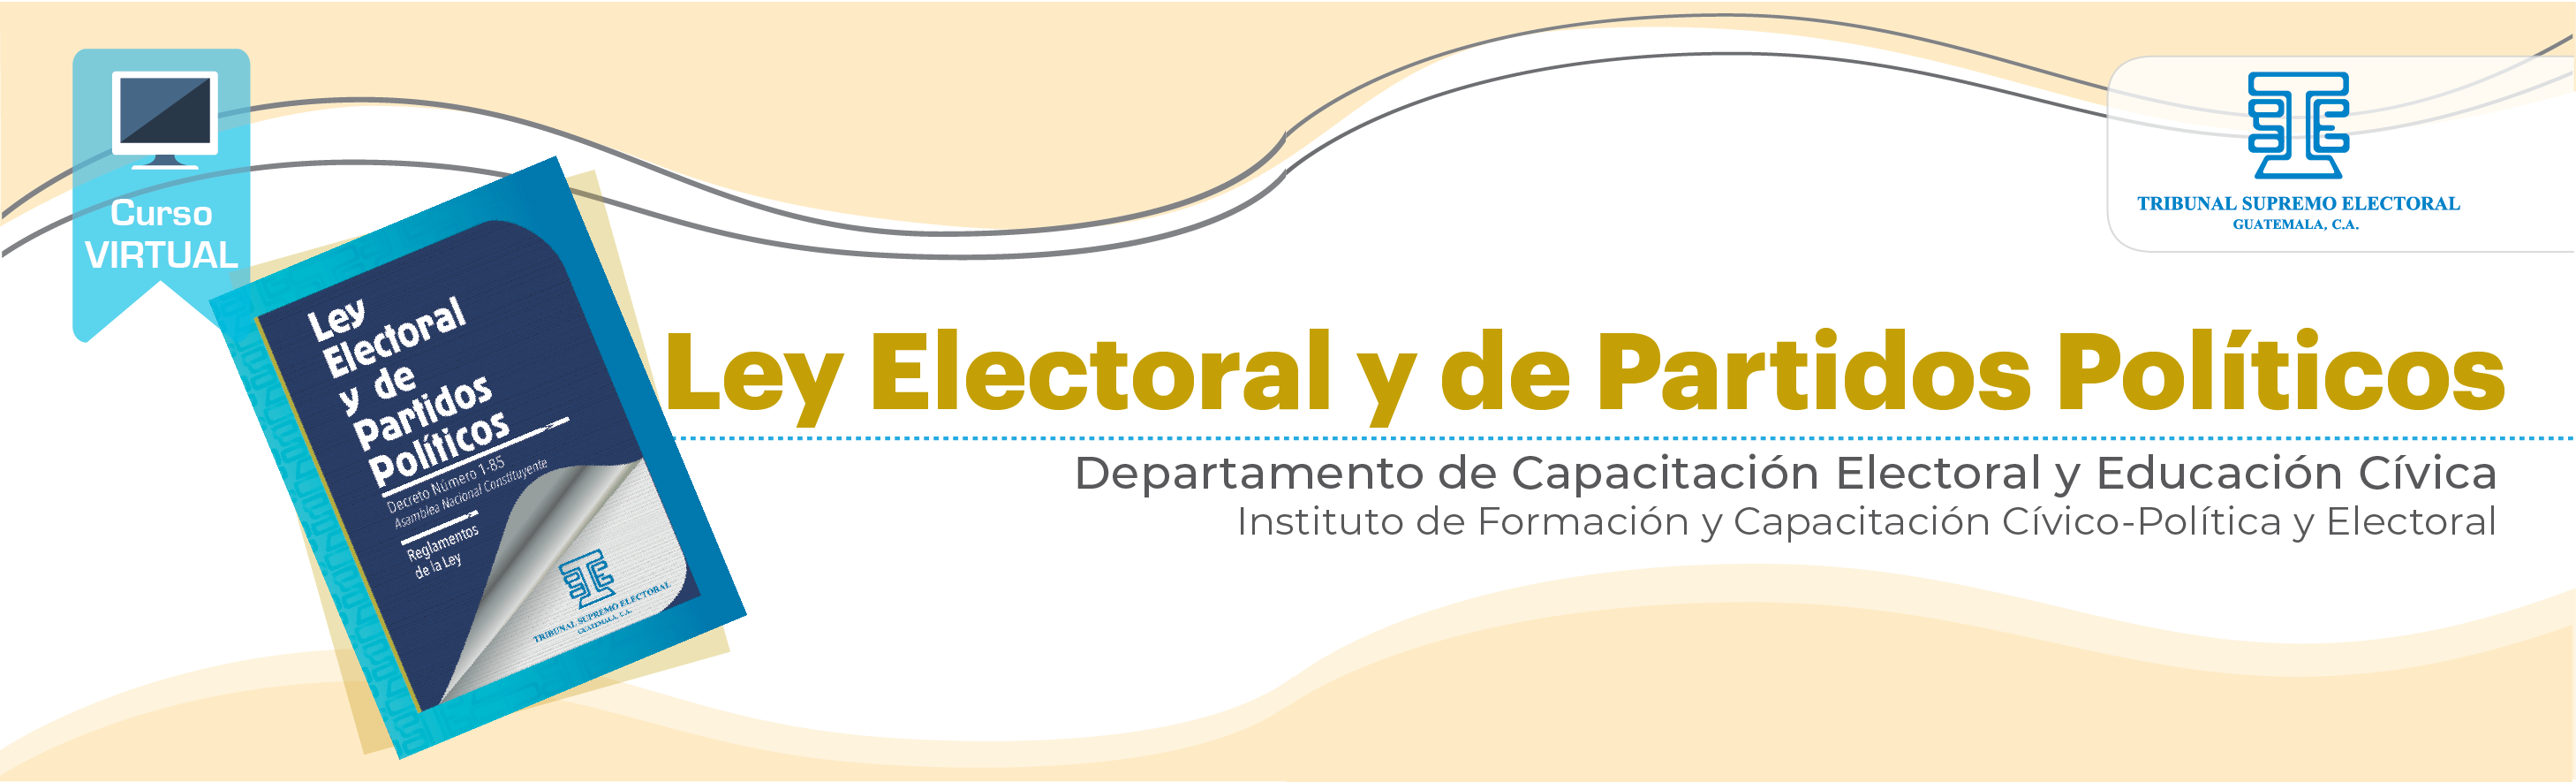 Ley Electoral y de Partidos Políticos 2022 J